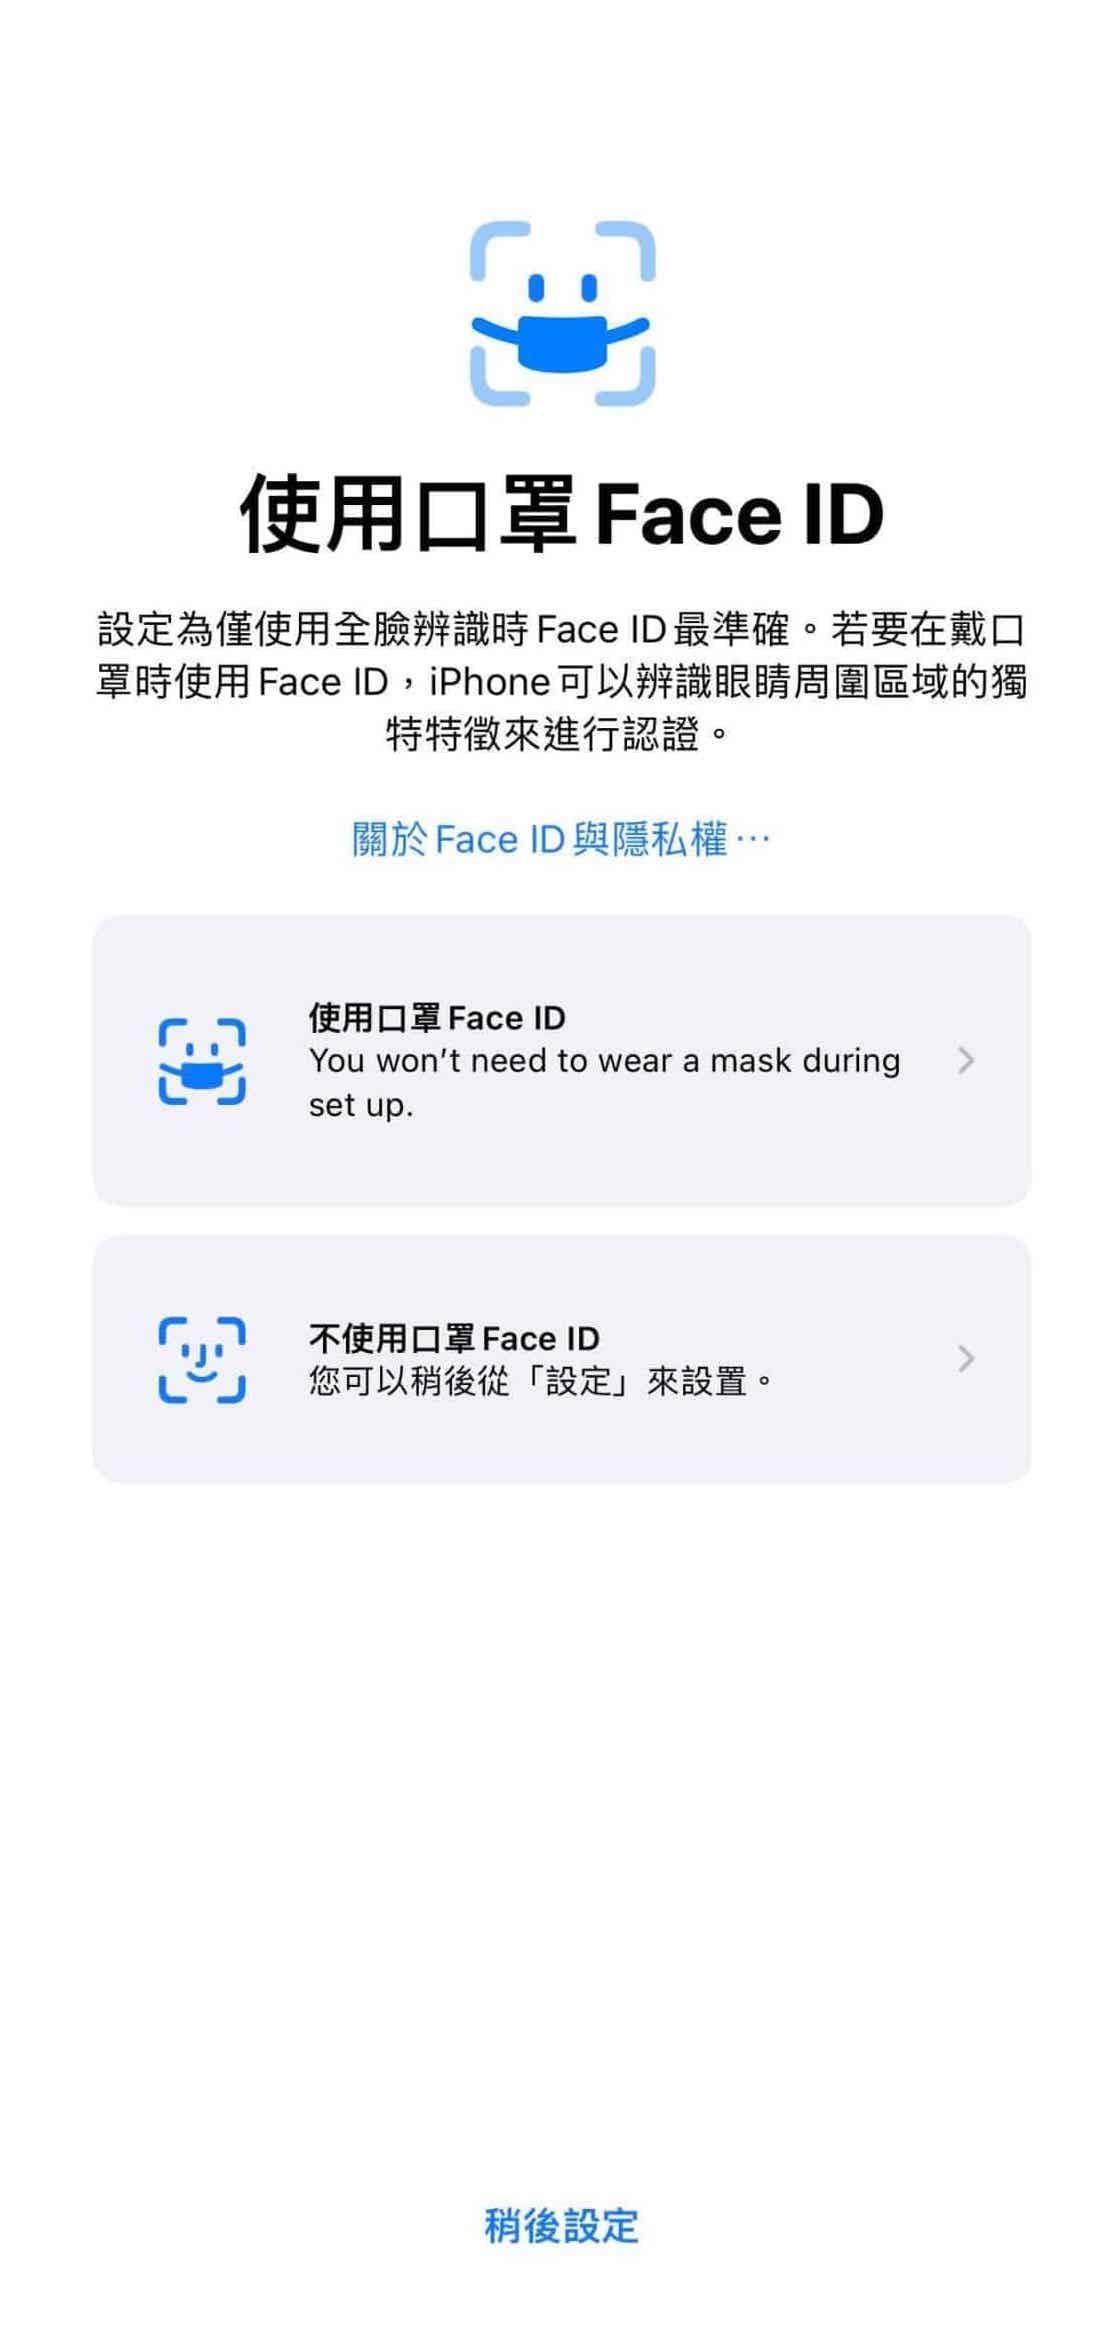 apple 支援口罩解鎖 Face ID 